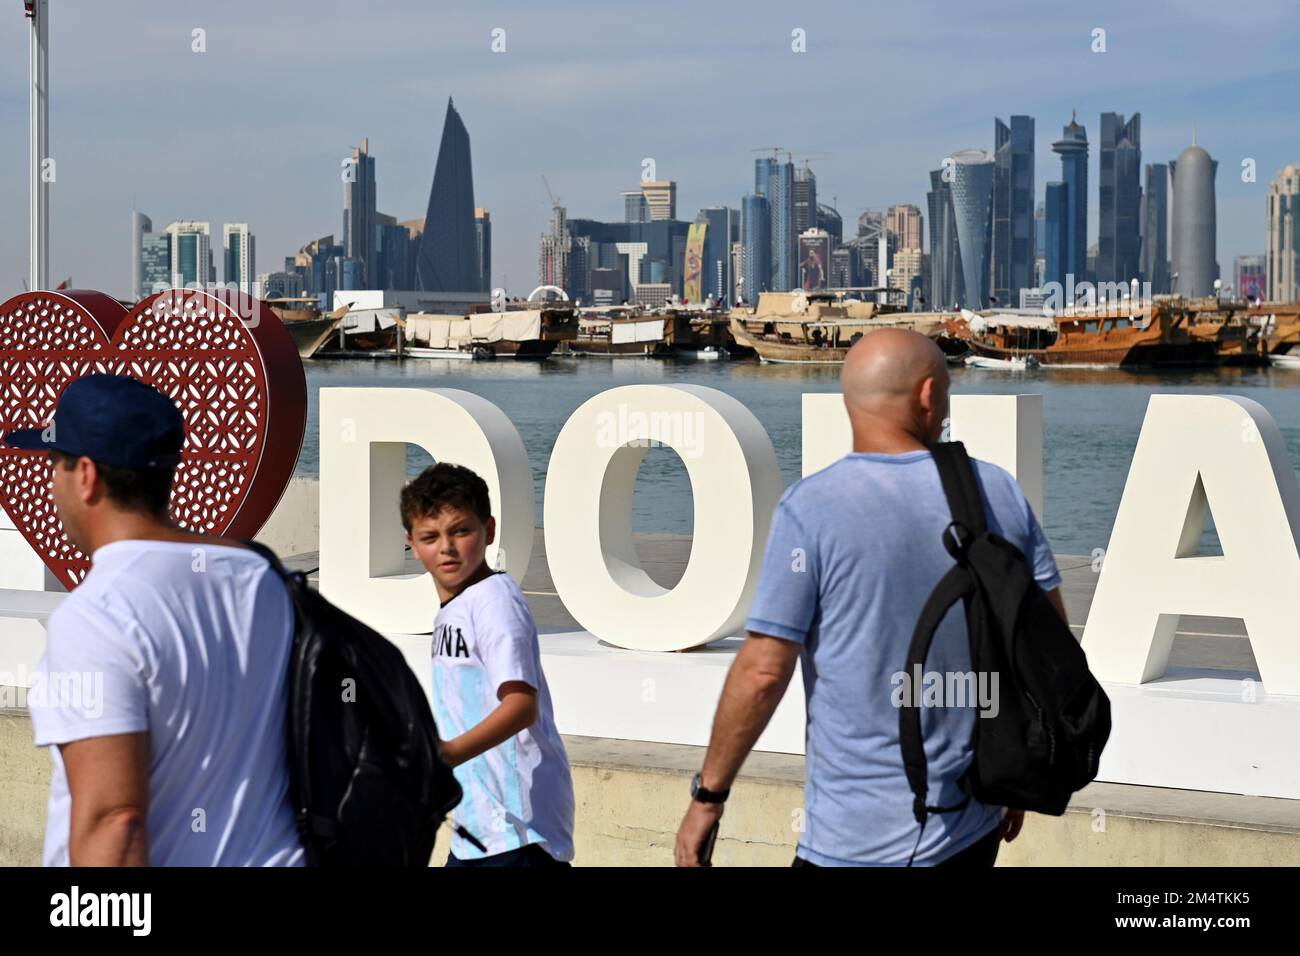 Impressioni da Doha/Qatar il 29th novembre 2022. FIFA Fanfest, Corniche West Bay.The Corniche. Amo Doha, lo skyline, la silhouette, il grattacielo. Coppa del mondo di Calcio 2022 in Qatar dal 20,11. 18.12.2022 Foto Stock